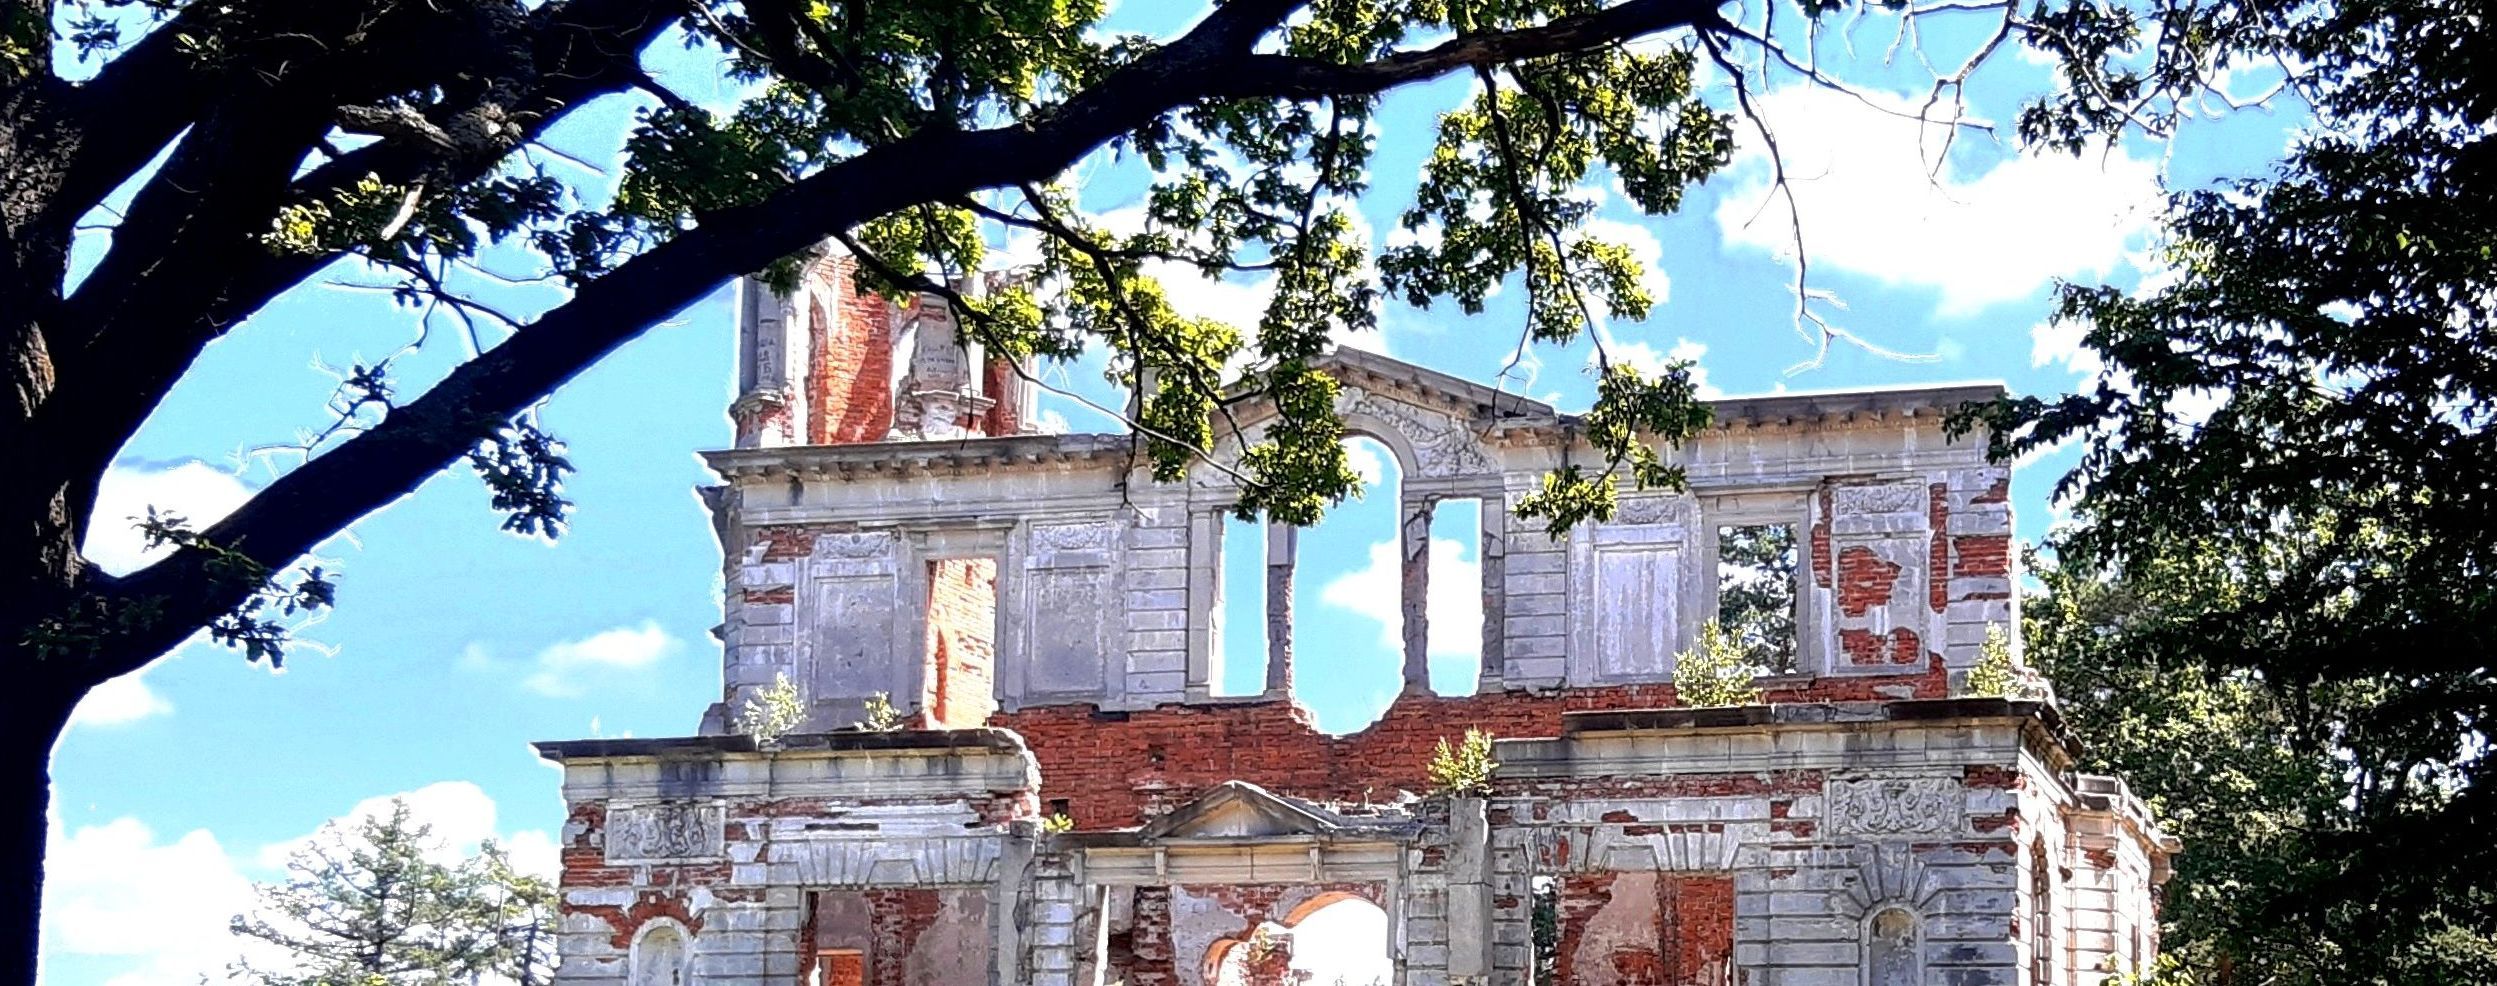 Туристическая Житомирщина: путешествуем по руинам империи сахарозаводчиков Терещенко